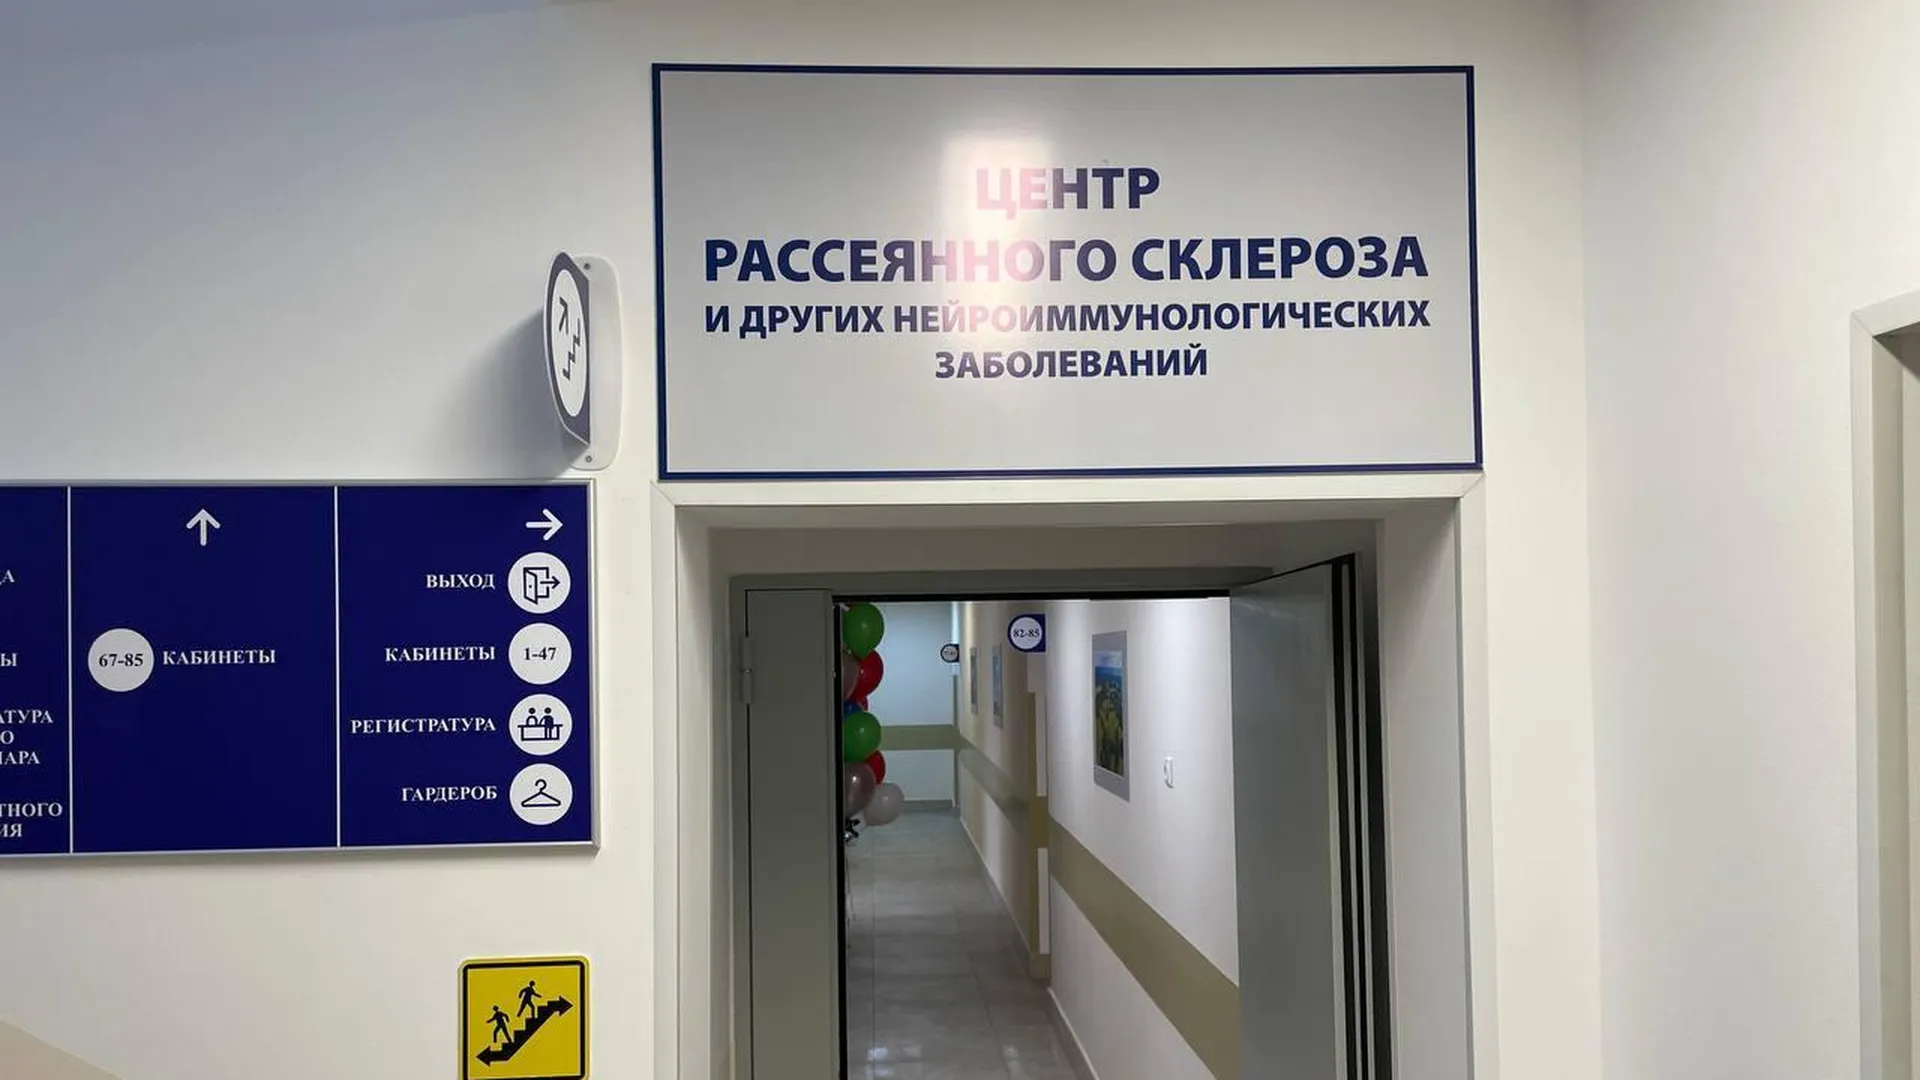 В подмосковном Реутове открыли очередной Центр рассеянного склероза